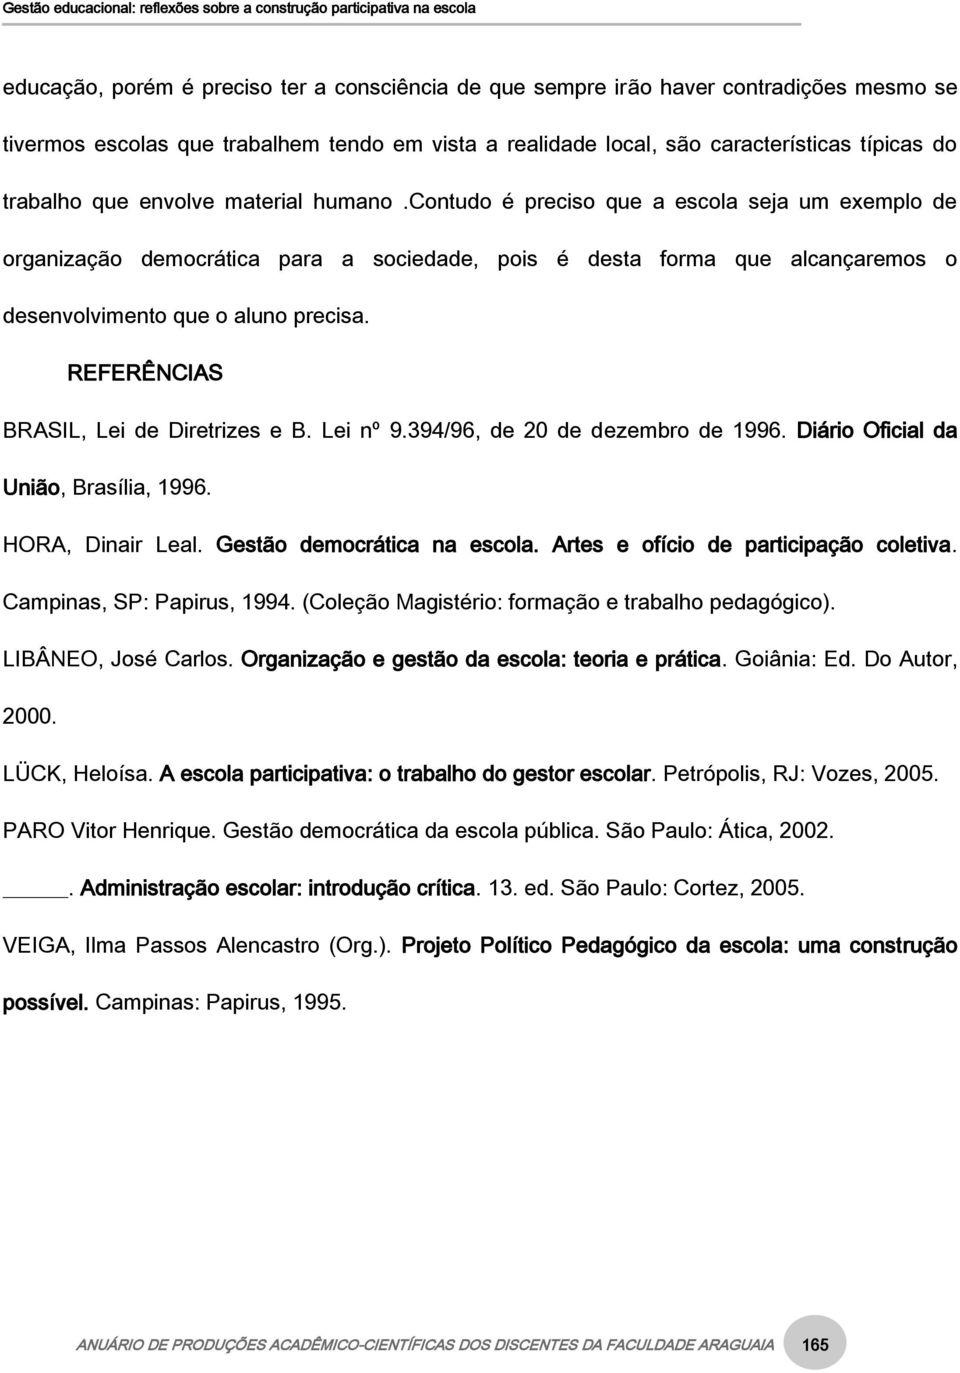 REFERÊNCIAS BRASIL, Lei de Diretrizes e B. Lei nº 9.394/96, de 20 de dezembro de 1996. Diário Oficial da União, Brasília, 1996. HORA, Dinair Leal. Gestão democrática na escola.